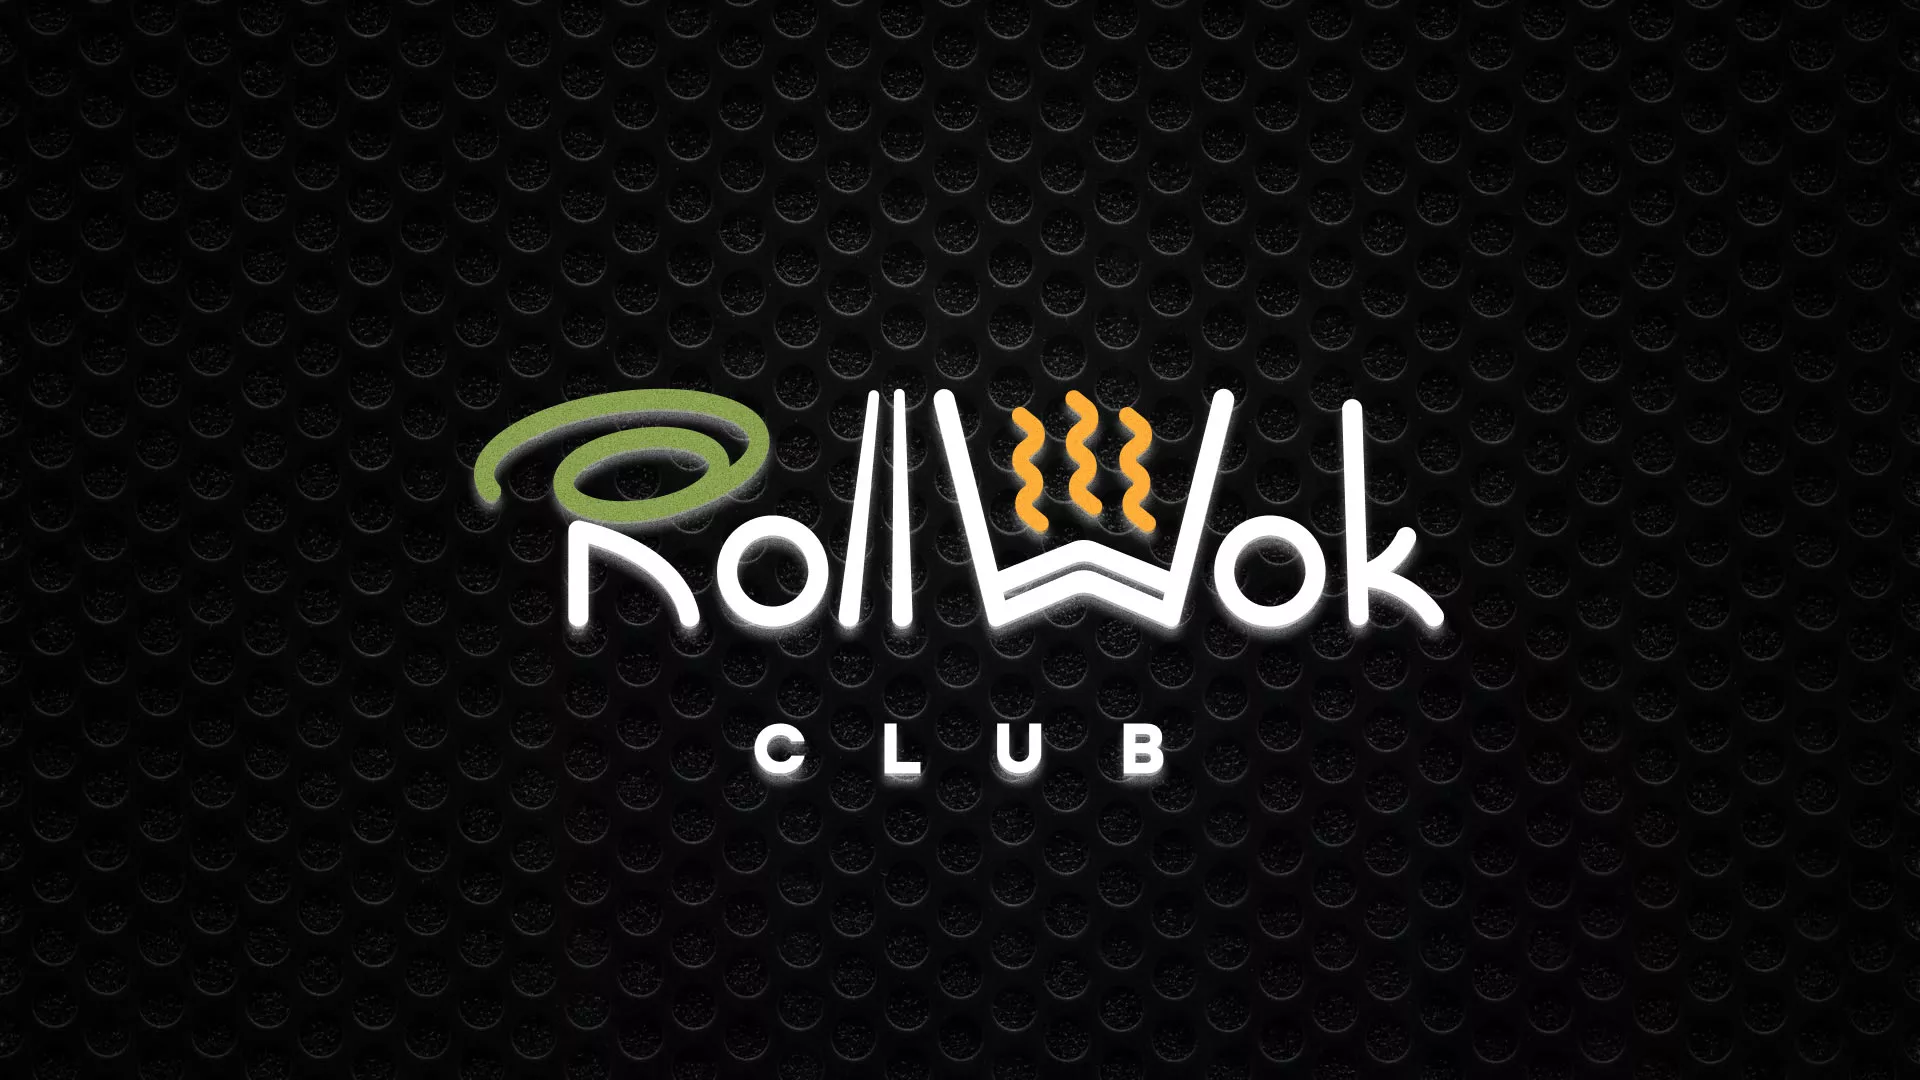 Брендирование торговых точек суши-бара «Roll Wok Club» в Грязях